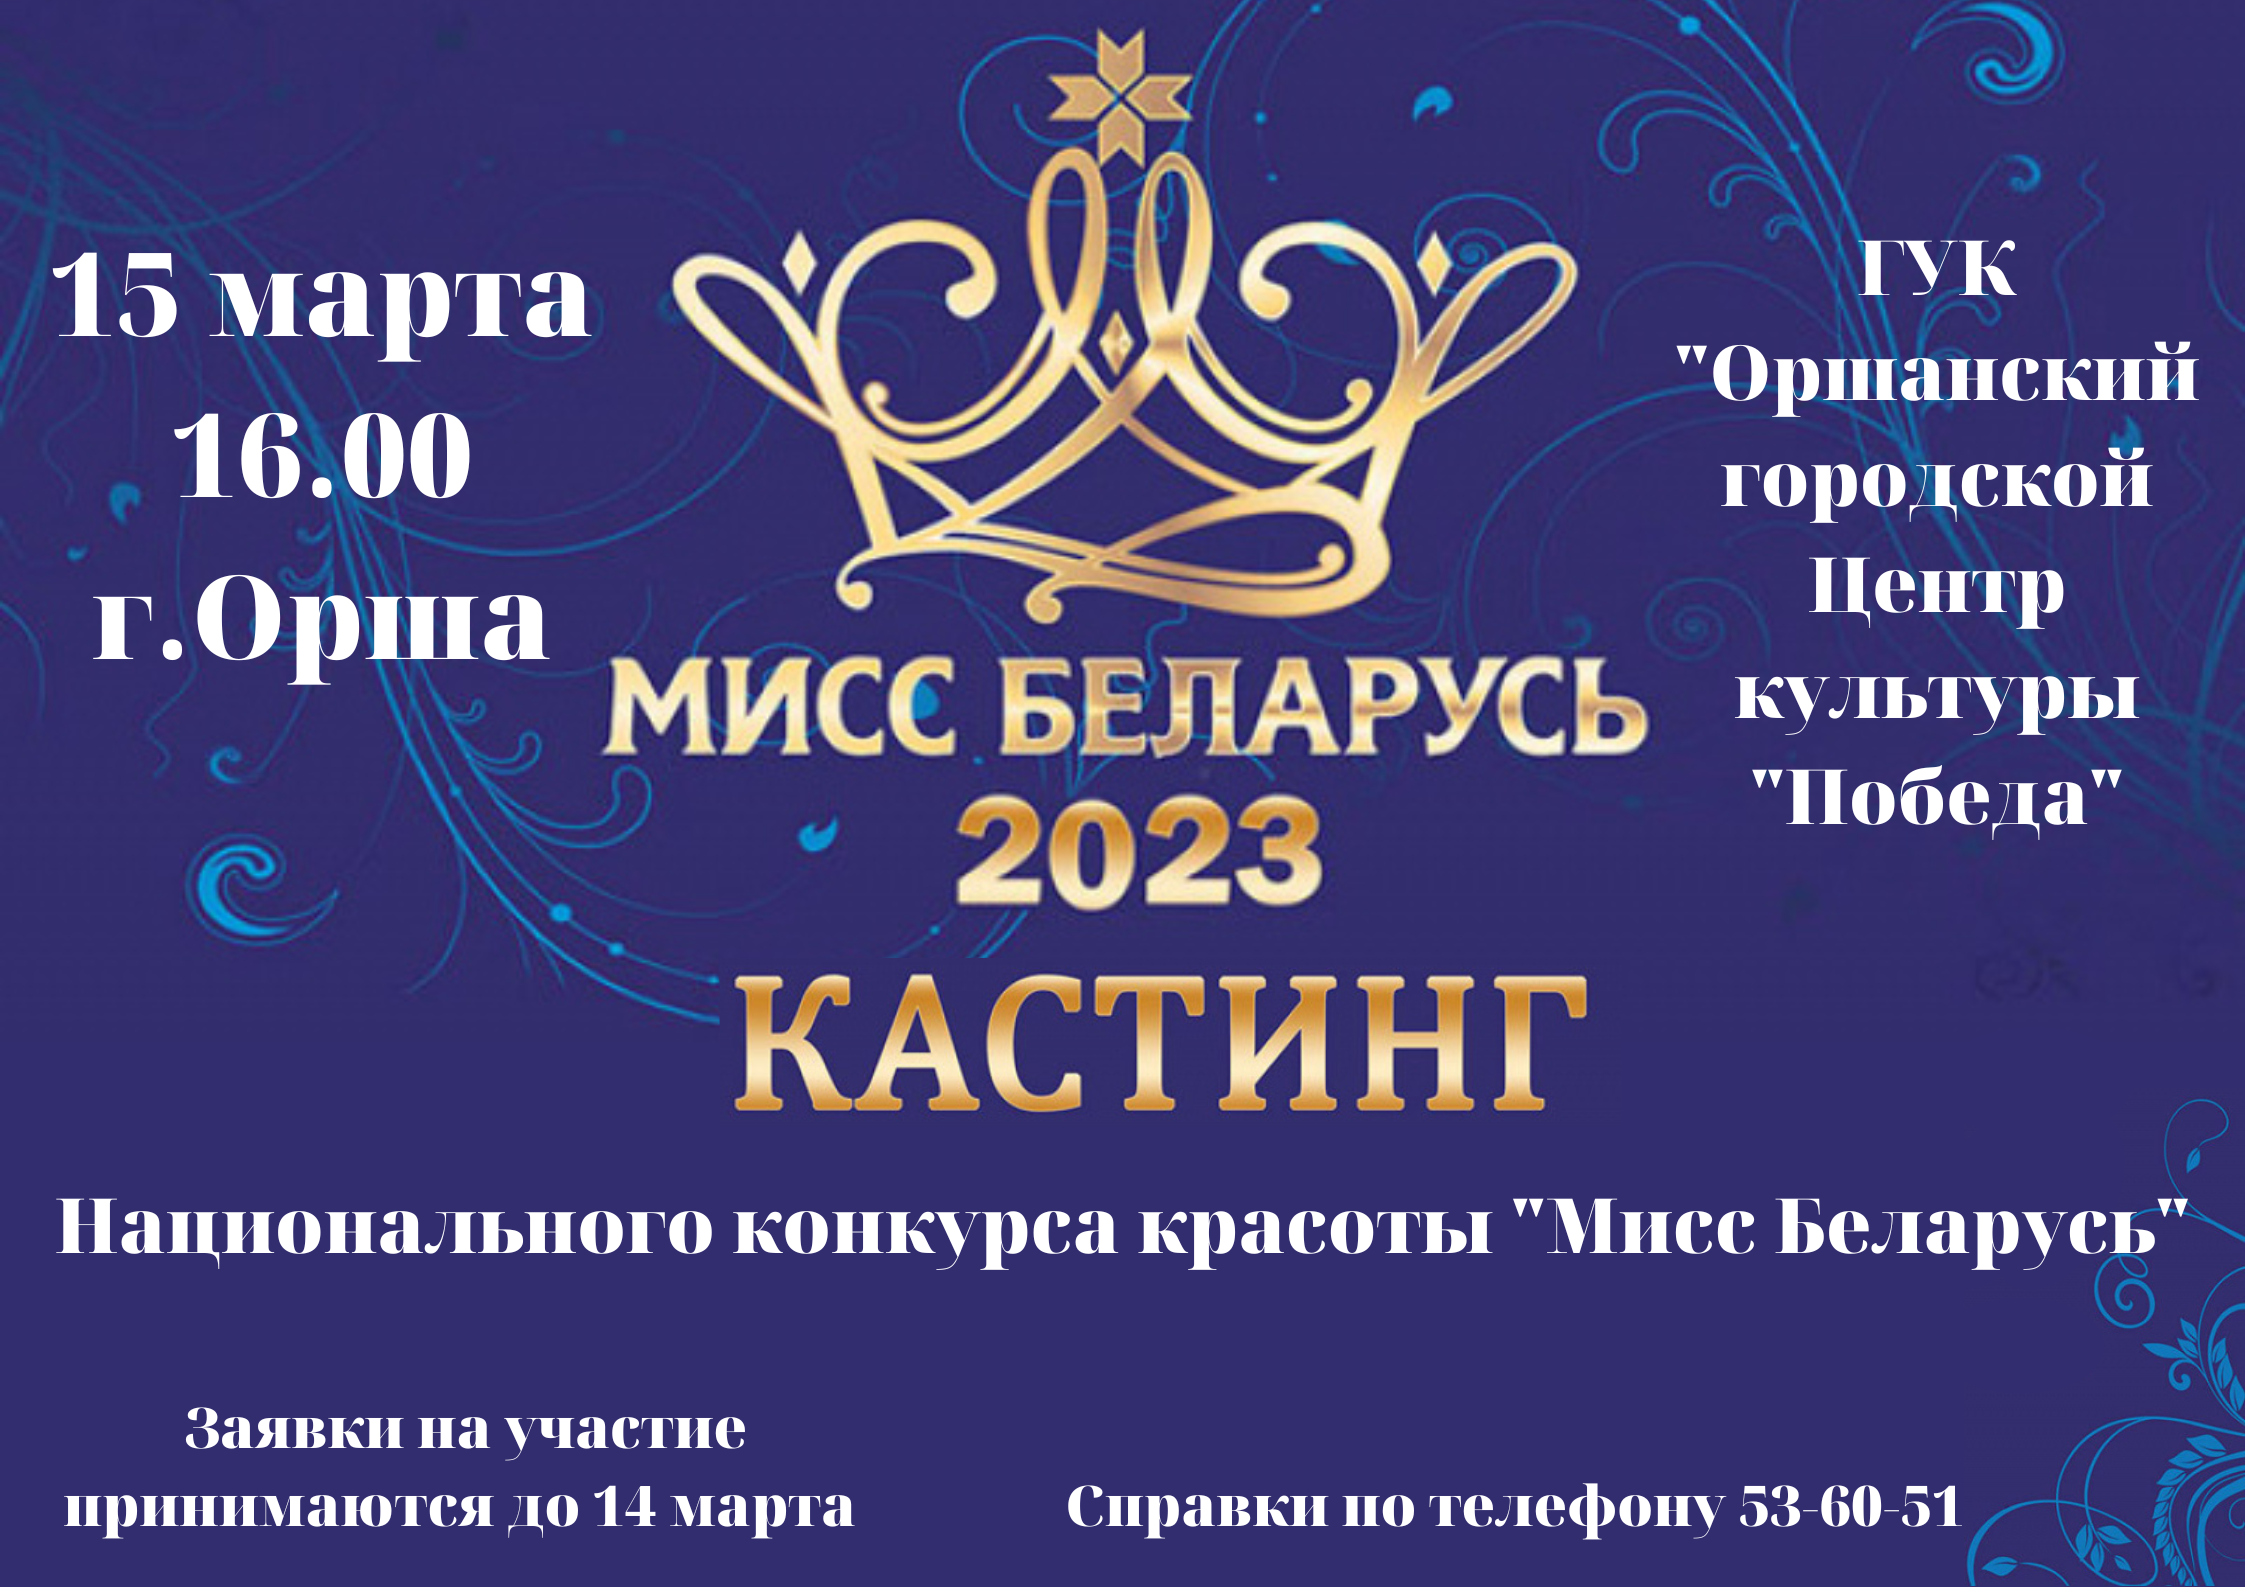 Мисс Беларусь 2023 кастинг горизонтальная